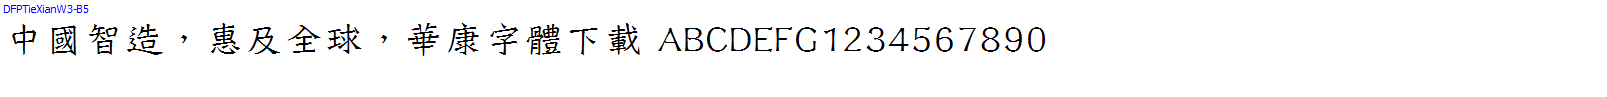 華康字體DFPTieXianW3-B5.TTF